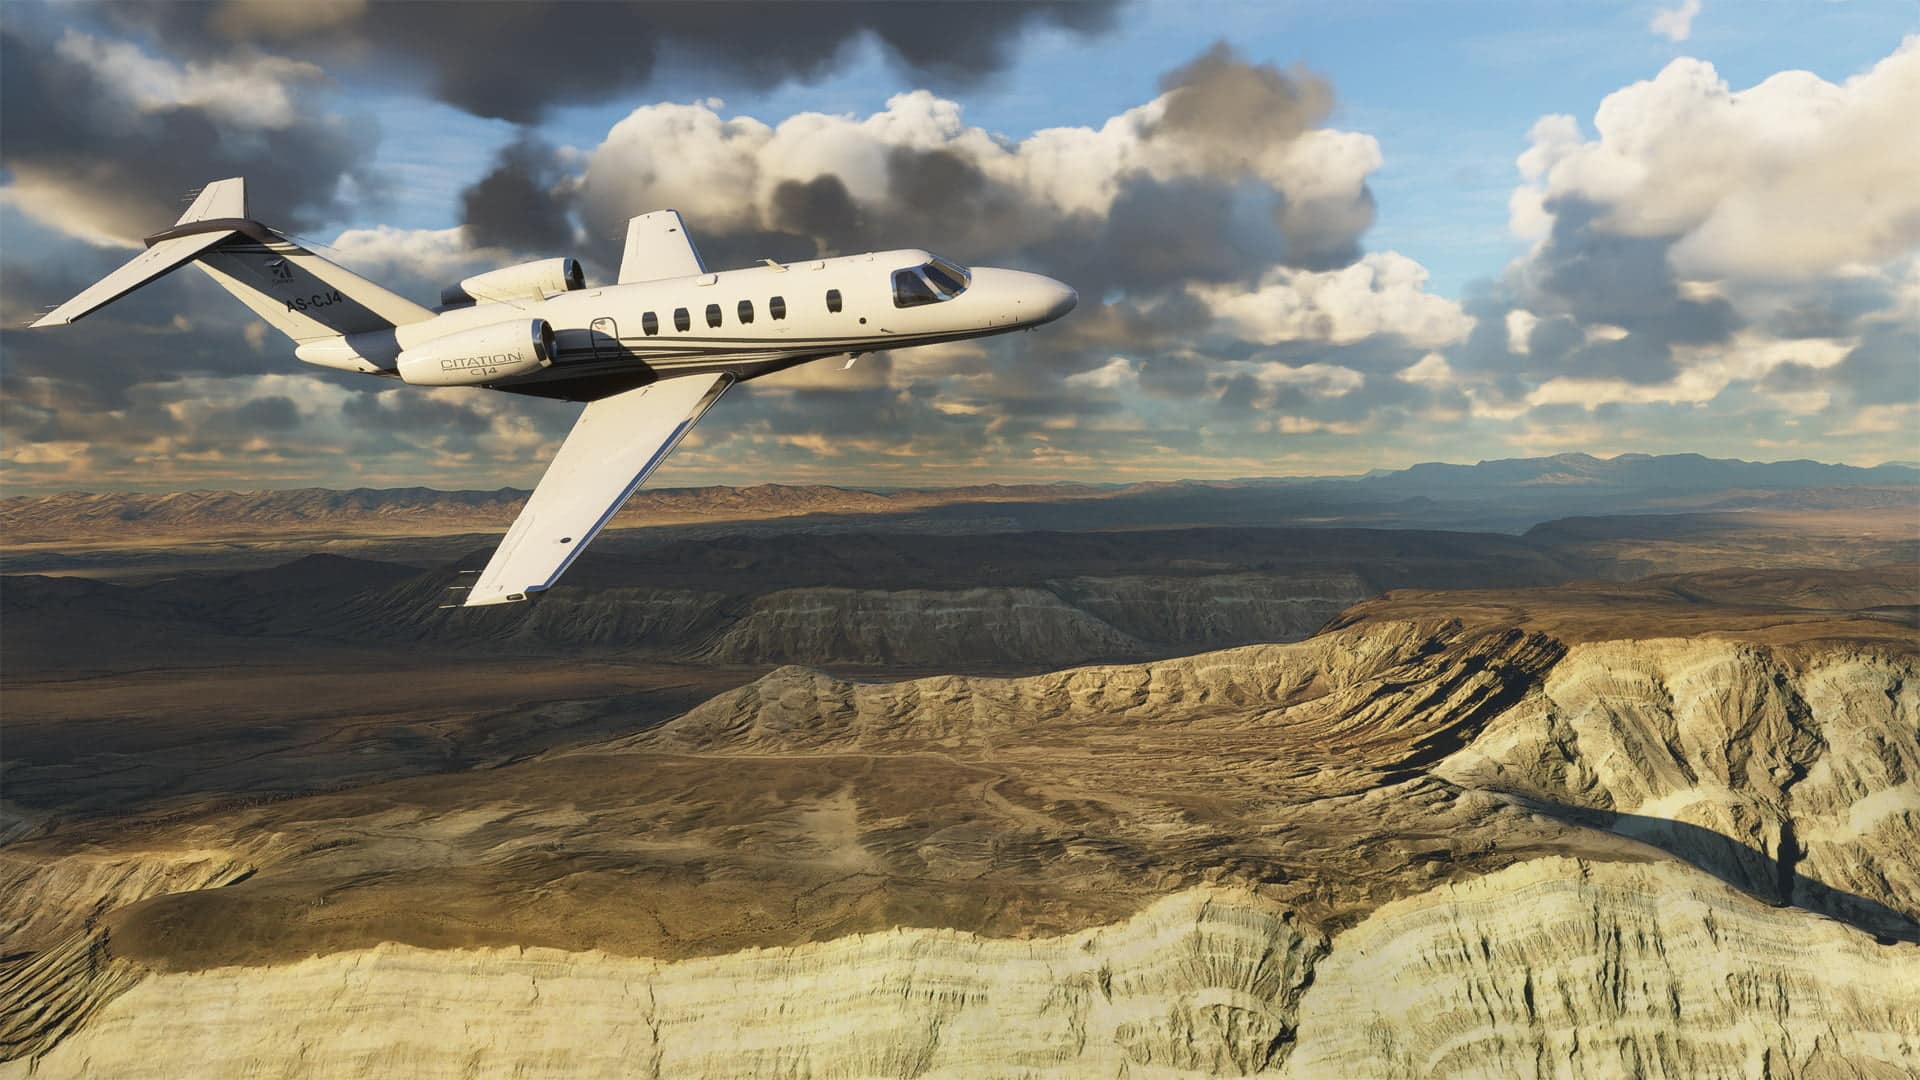 Microsoft flight simulator será lançado em agosto | 855a22b7 microsoft flight simulator 2020 38 | microsoft flight simulator notícias